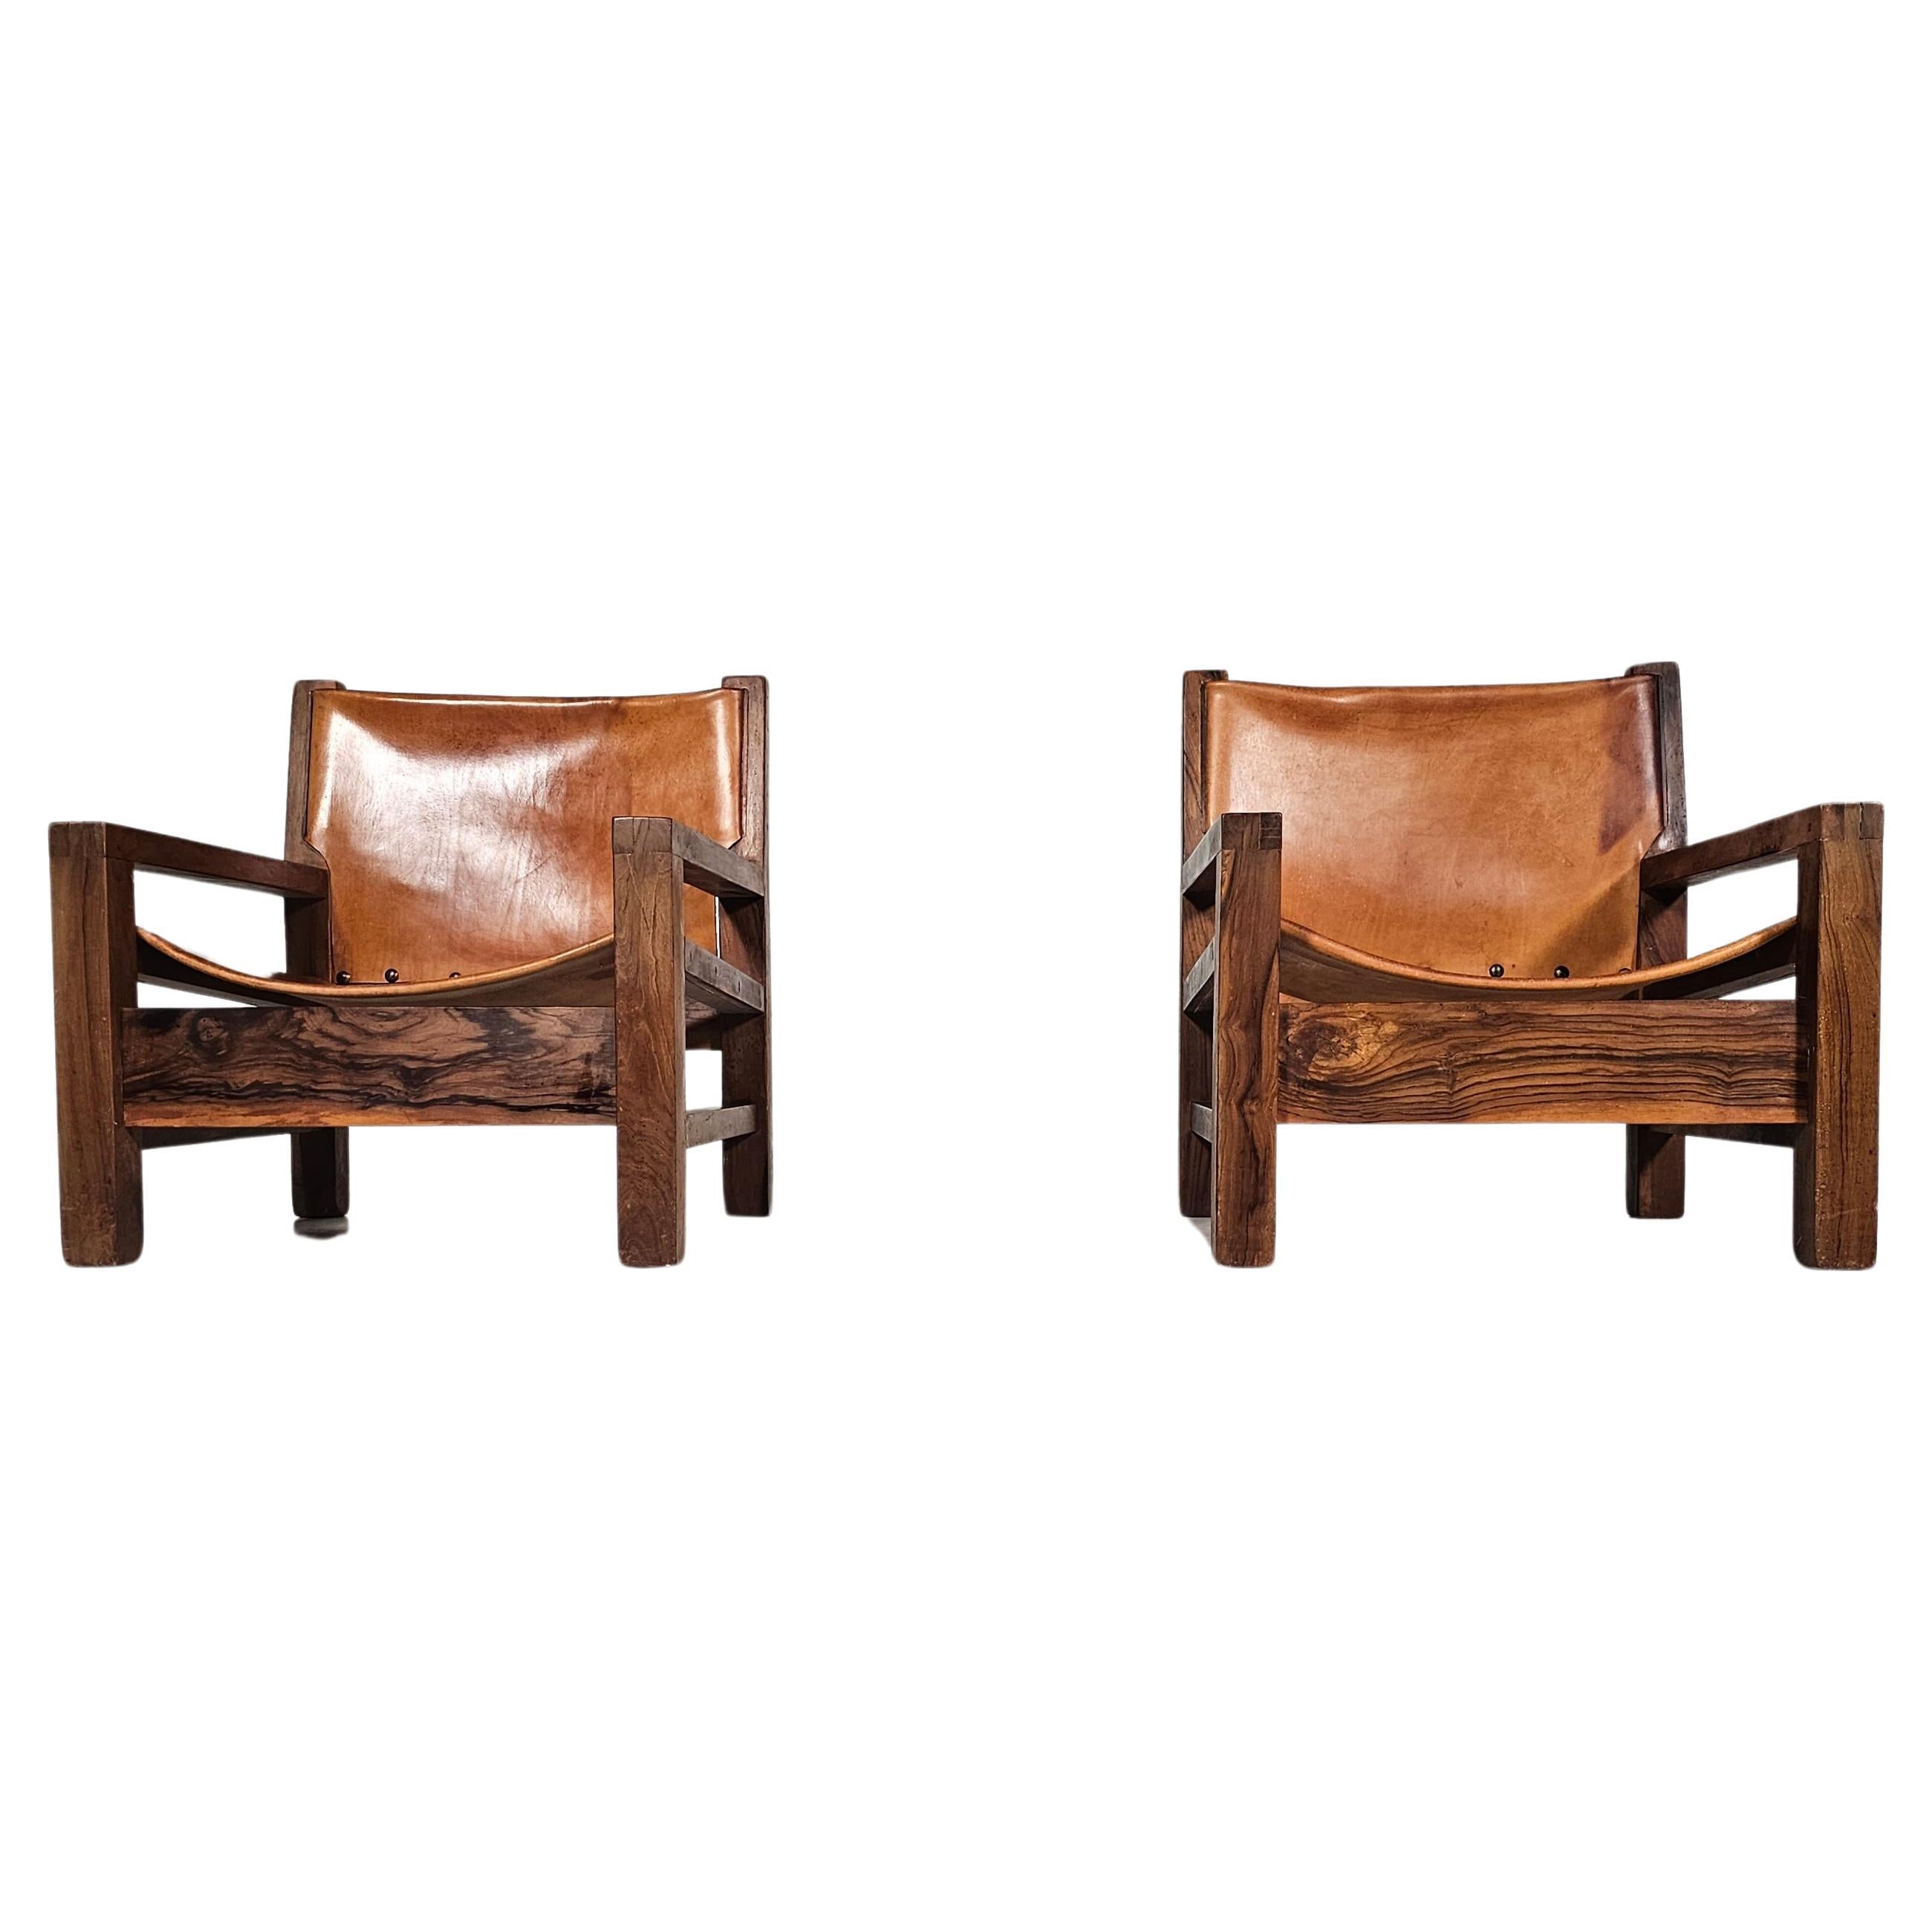 Ein Paar Sessel stammt aus den geschickten Händen eines erfahrenen Tischlers im Frankreich der 1970er Jahre. Die mit viel Liebe zum Detail gefertigten Sessel verfügen über eine Struktur aus edlem Olivenholz, die nicht nur Robustheit, sondern auch